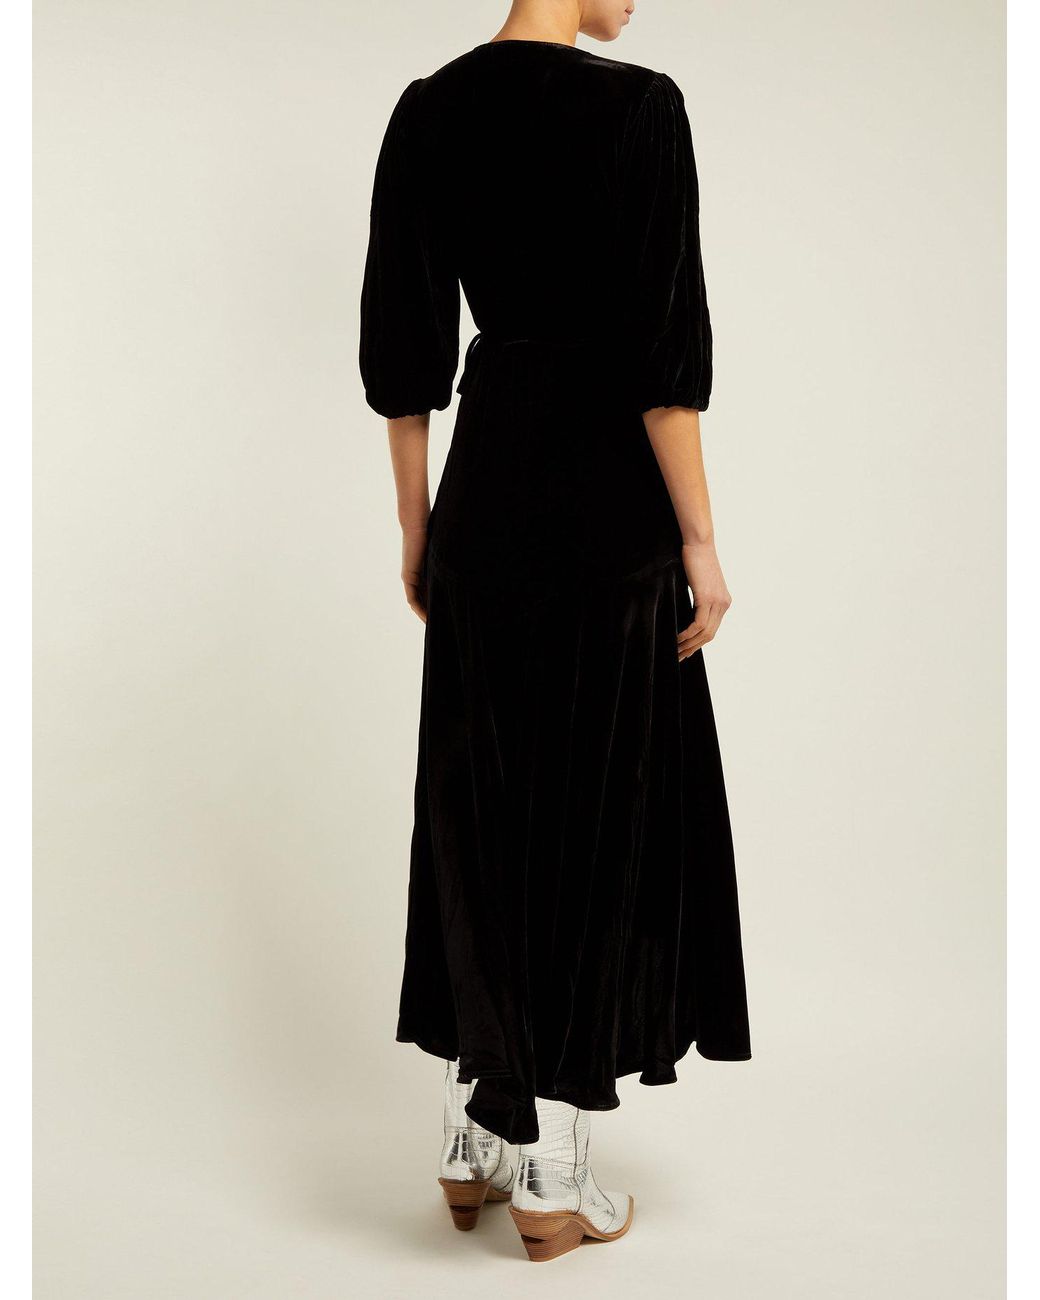 Ganni Aldine Velvet Wrap Dress in Black | Lyst